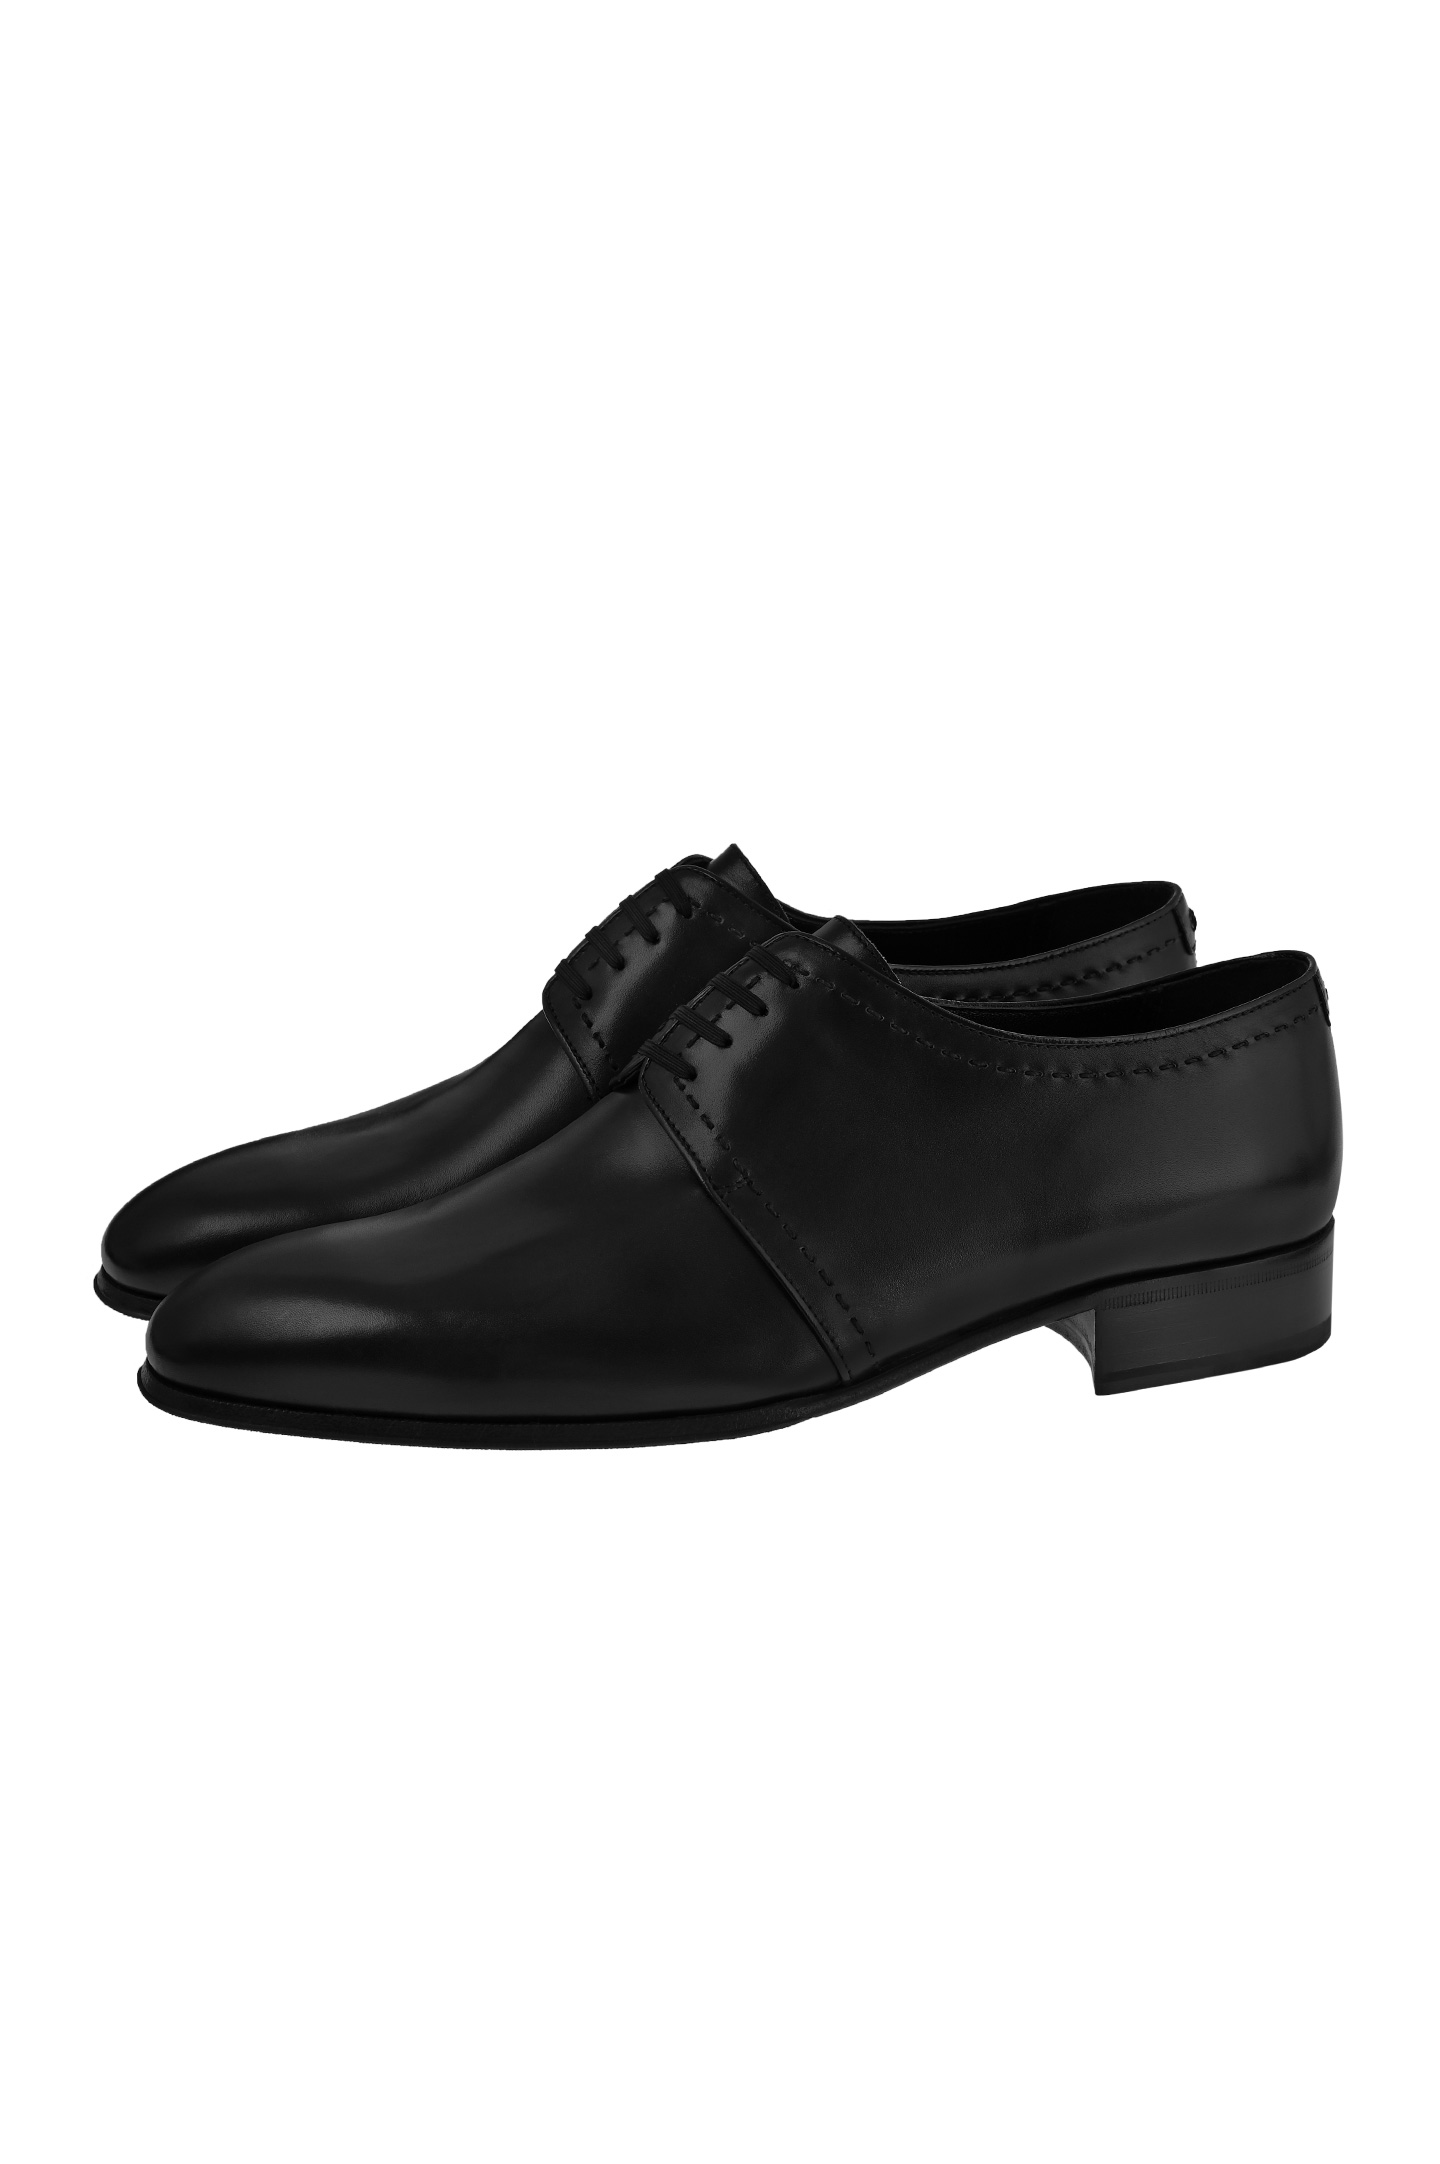 Туфли ARTIOLI 06S013/BIS, цвет: Черный, Мужской